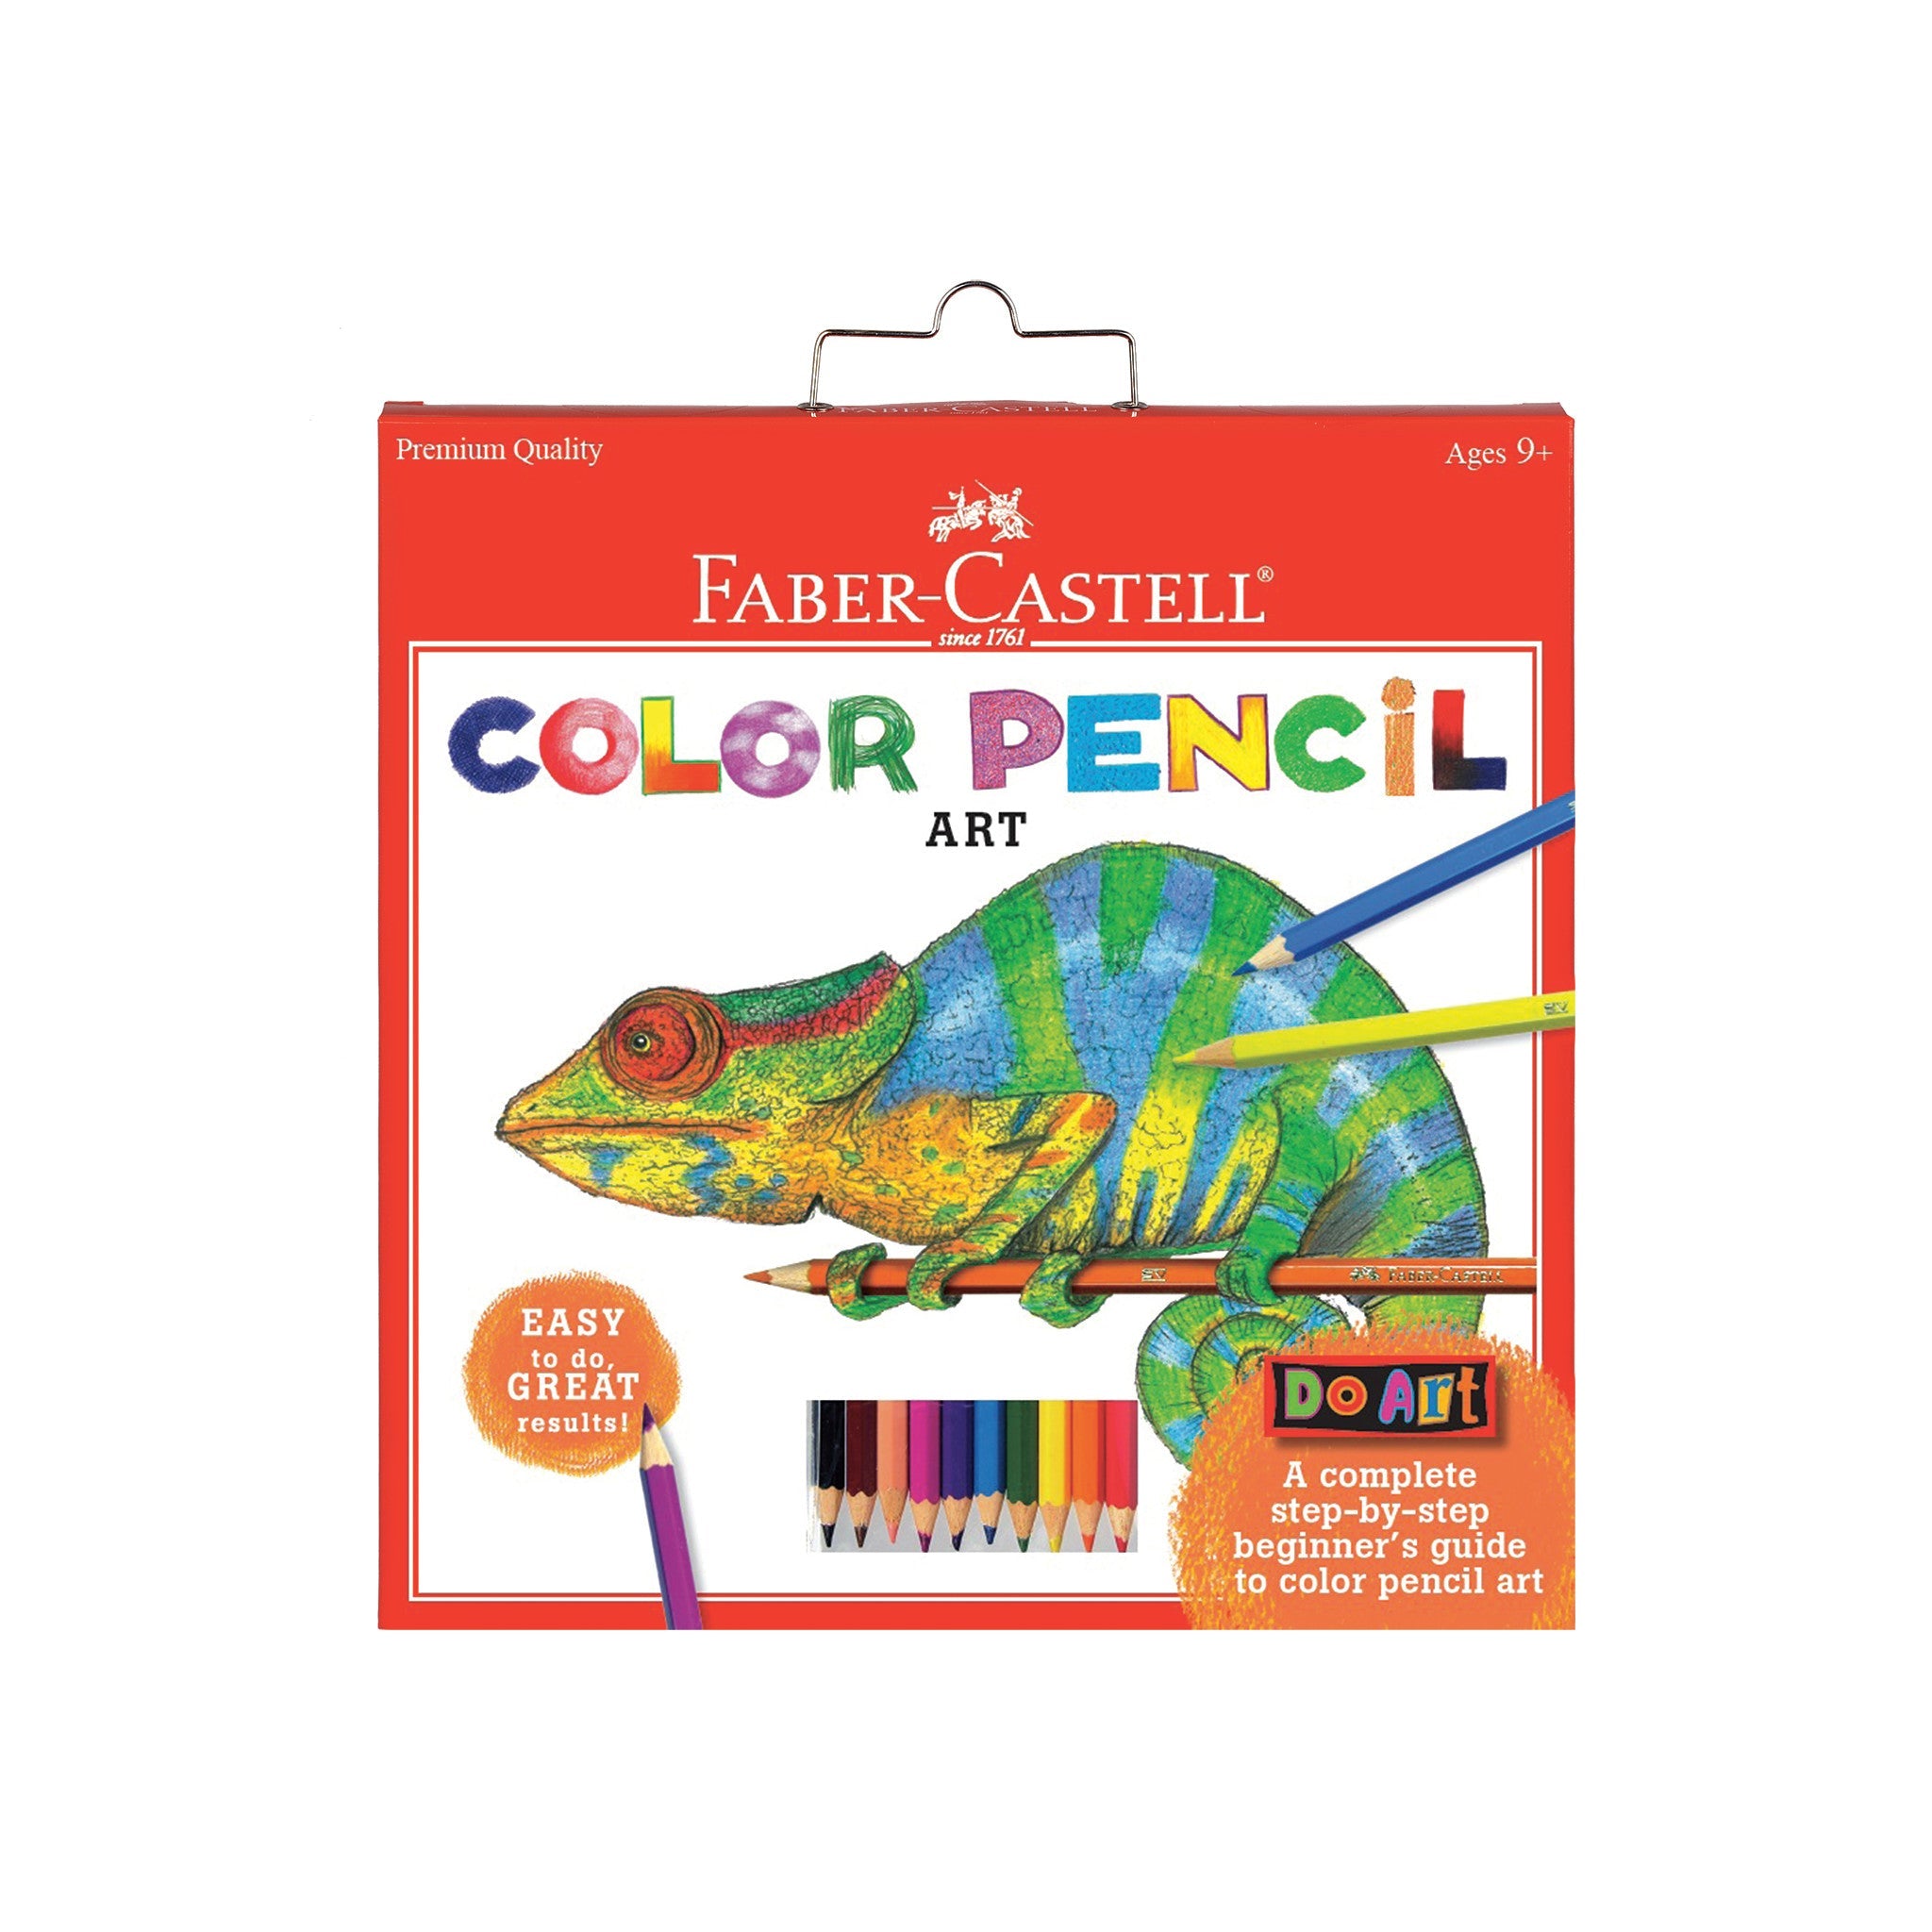 Do Art Colored Pencils